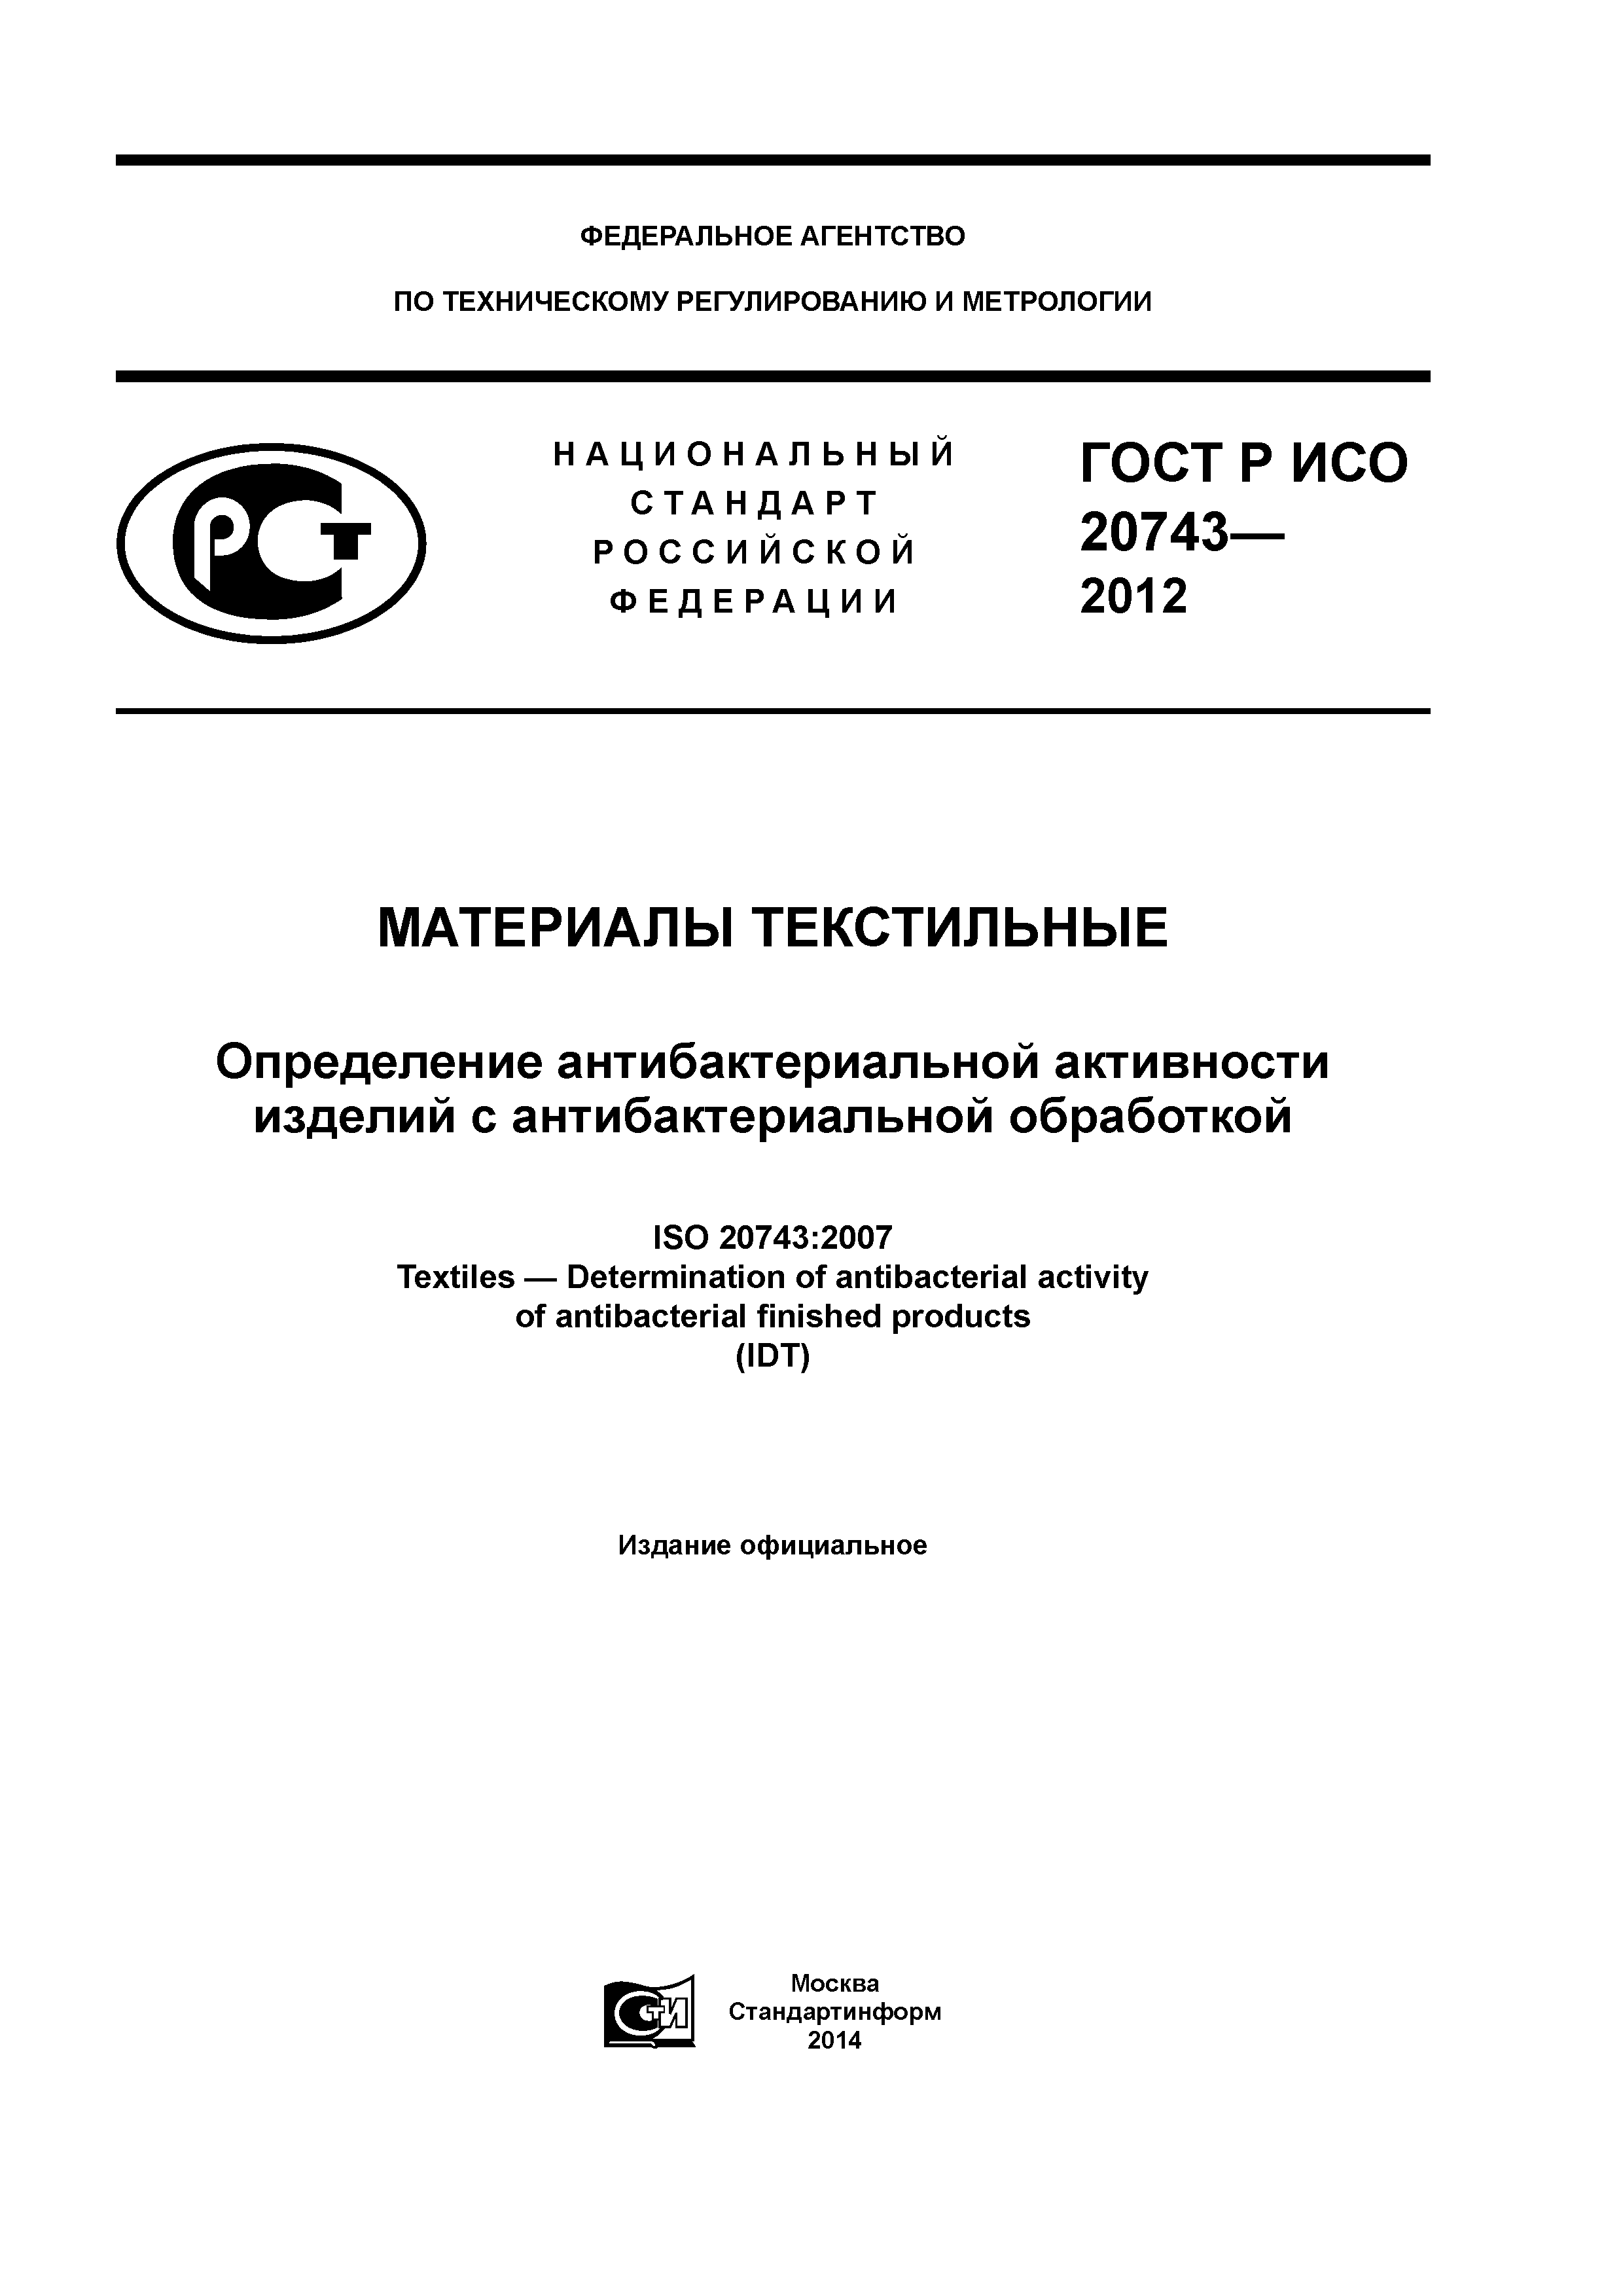 ГОСТ Р ИСО 20743-2012